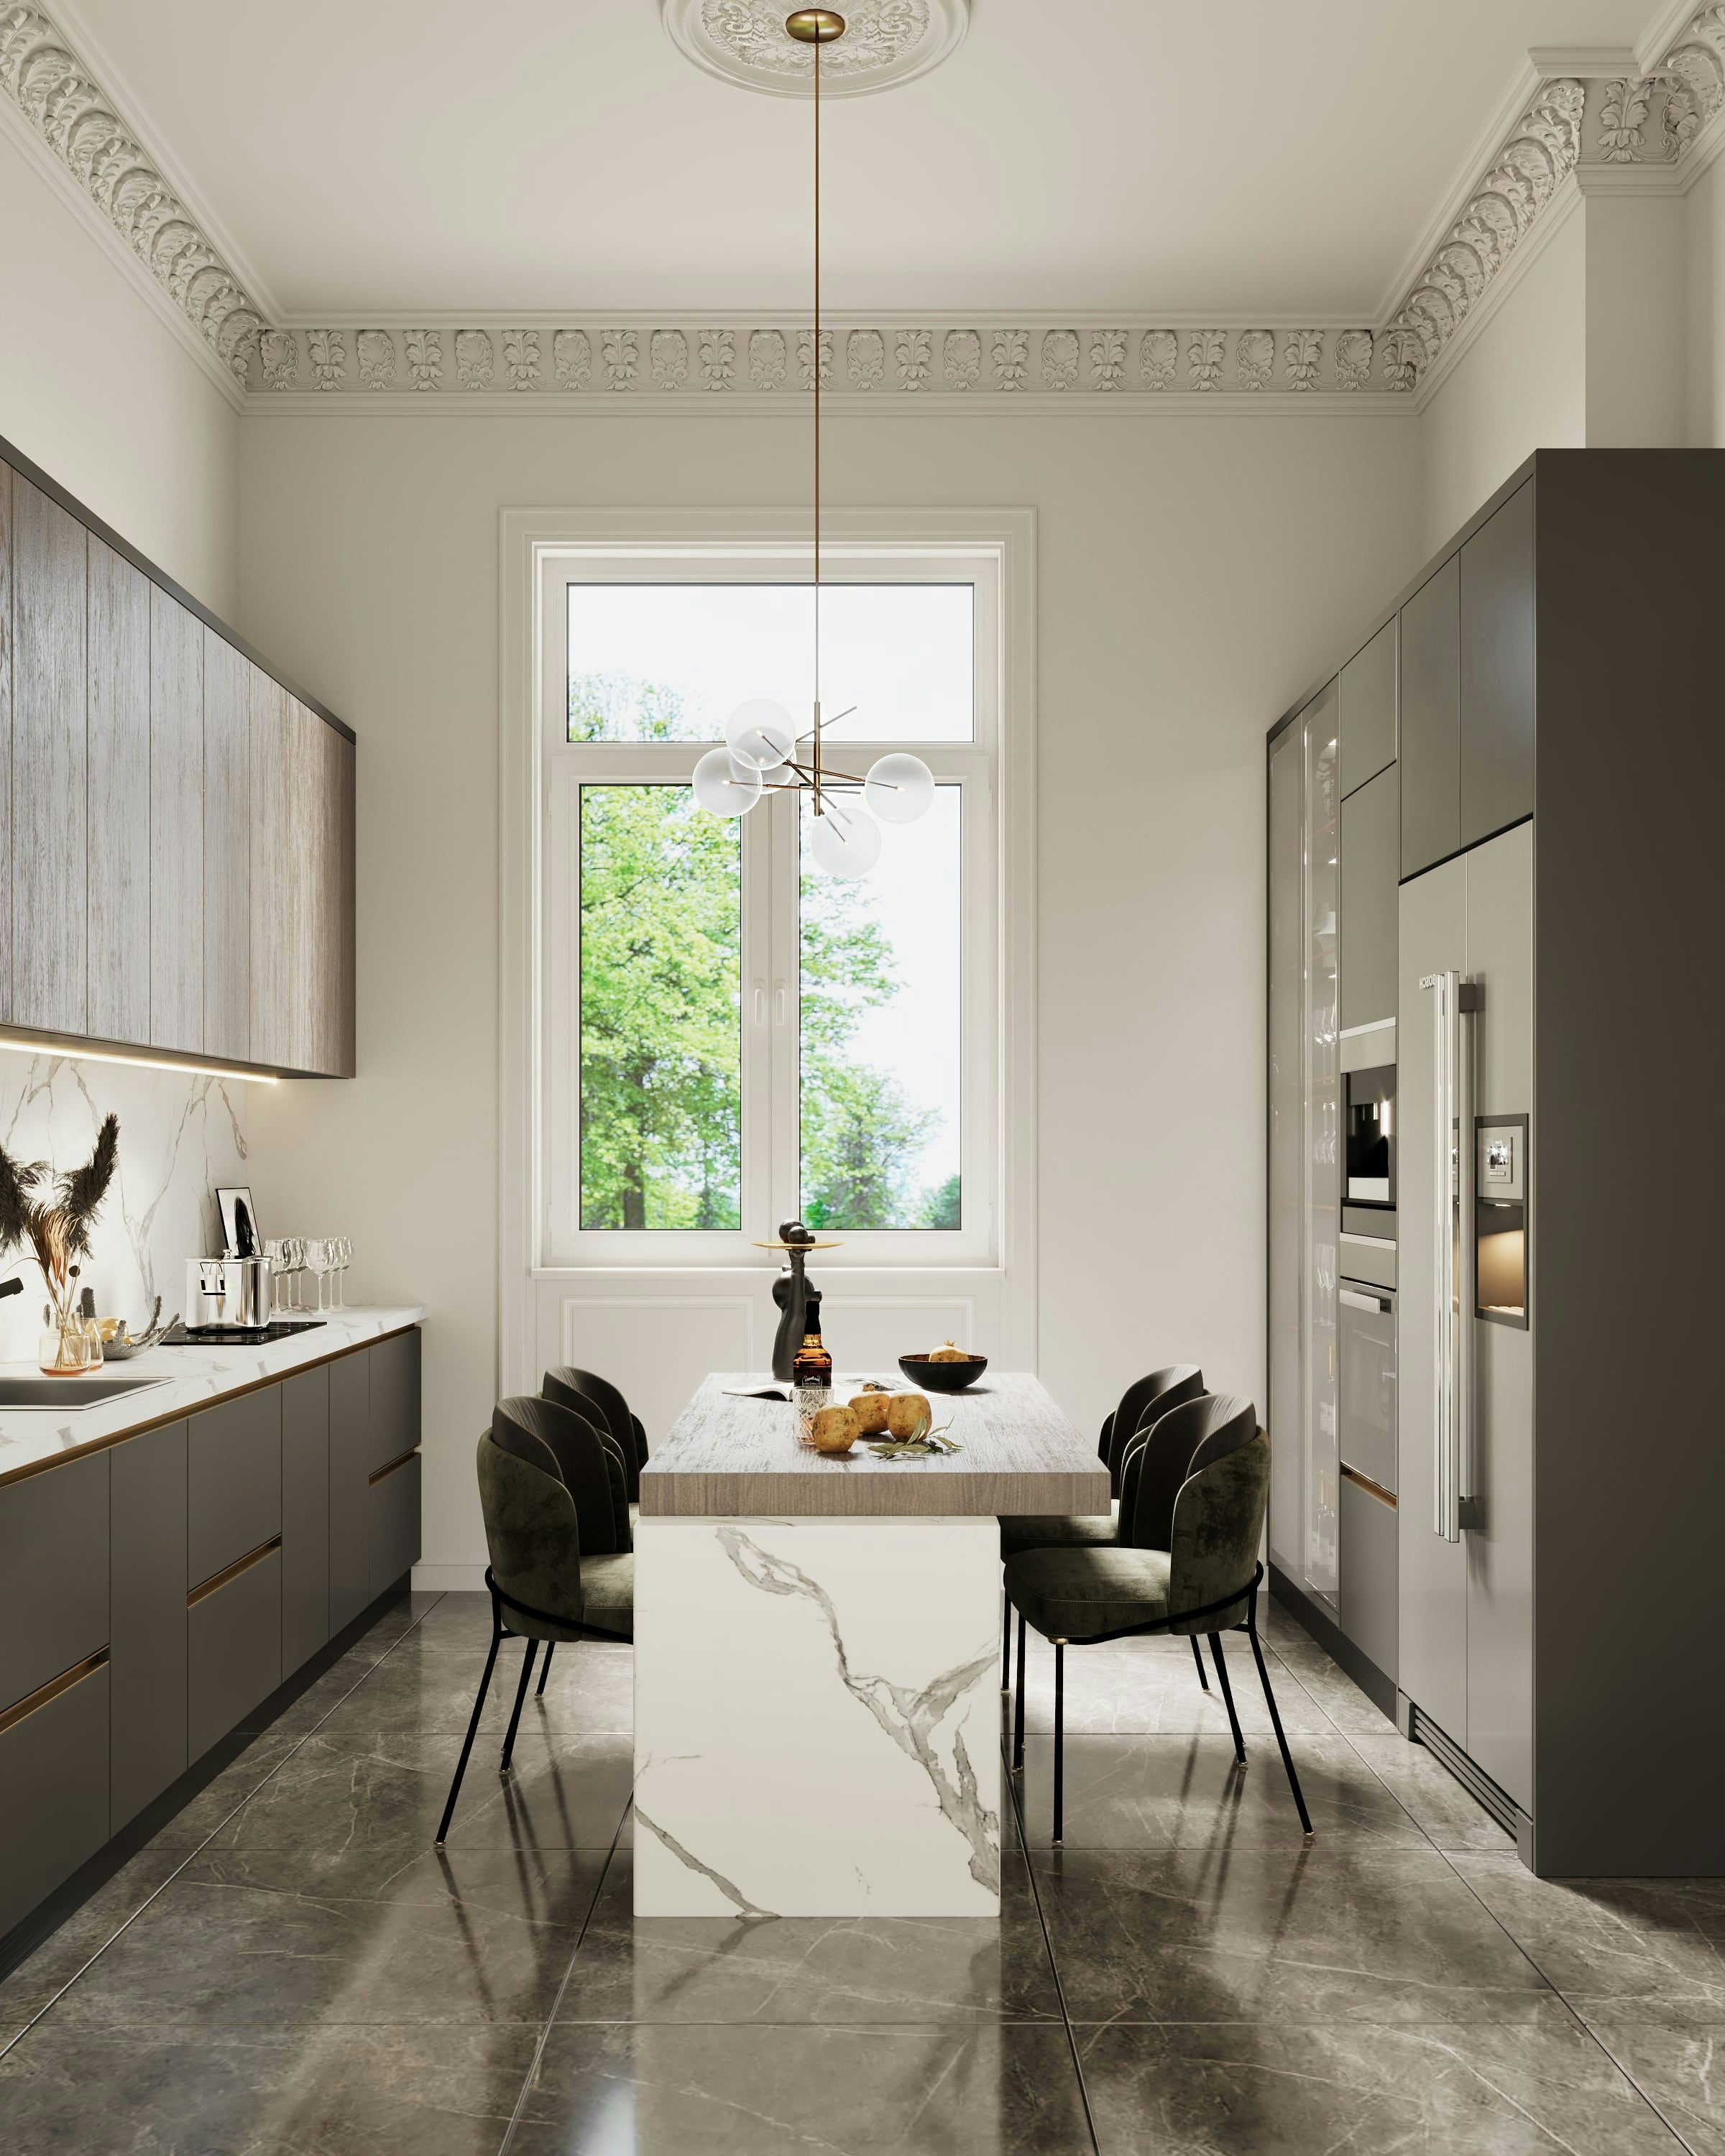 3D Innenvisualisierung der Küche mit Kücheninsel in einer renovierten historischen Wohnung in der Fliederstraße, Hamburg